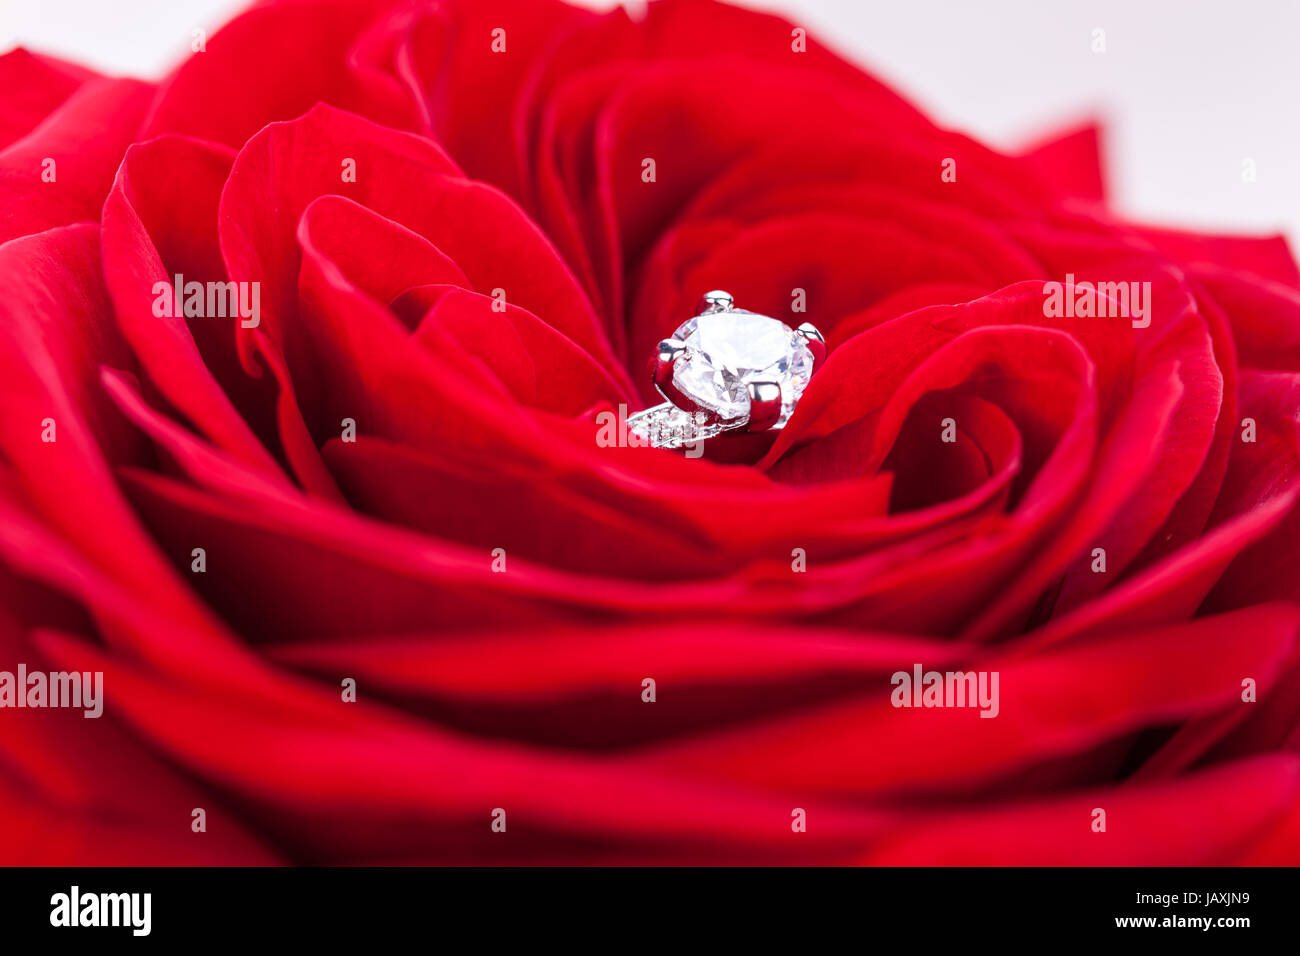 Wunderschöner silberner ring in einer roten rose makro nahaufnahme verlobung hochzeit geschenk schmuck Foto Stock